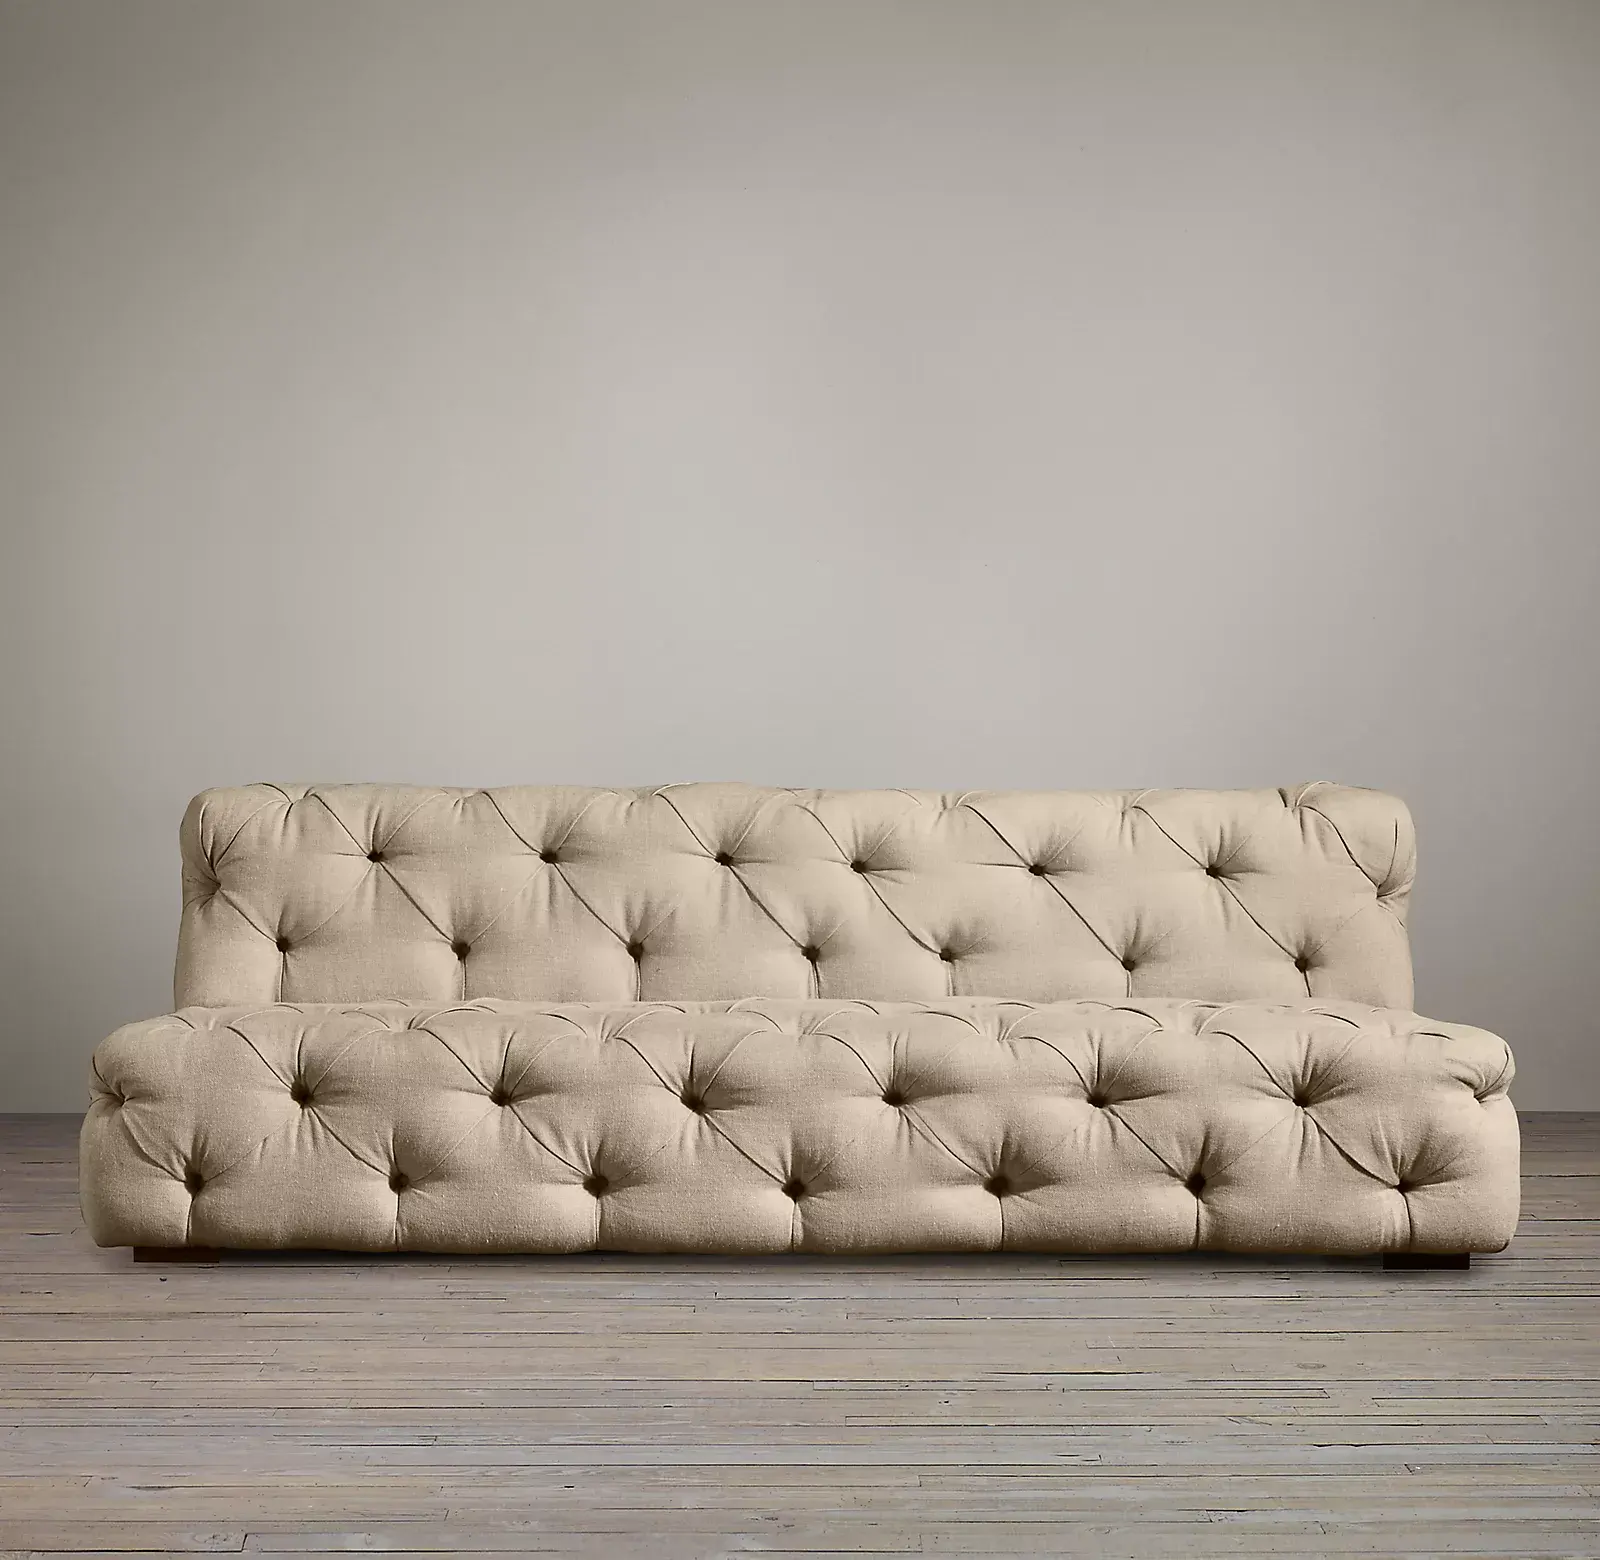 Mobiliário sofá de tecido de luxo personalizado, moderno, baixo chave, conjunto de mobiliário, sala de estar, sofá, mobília